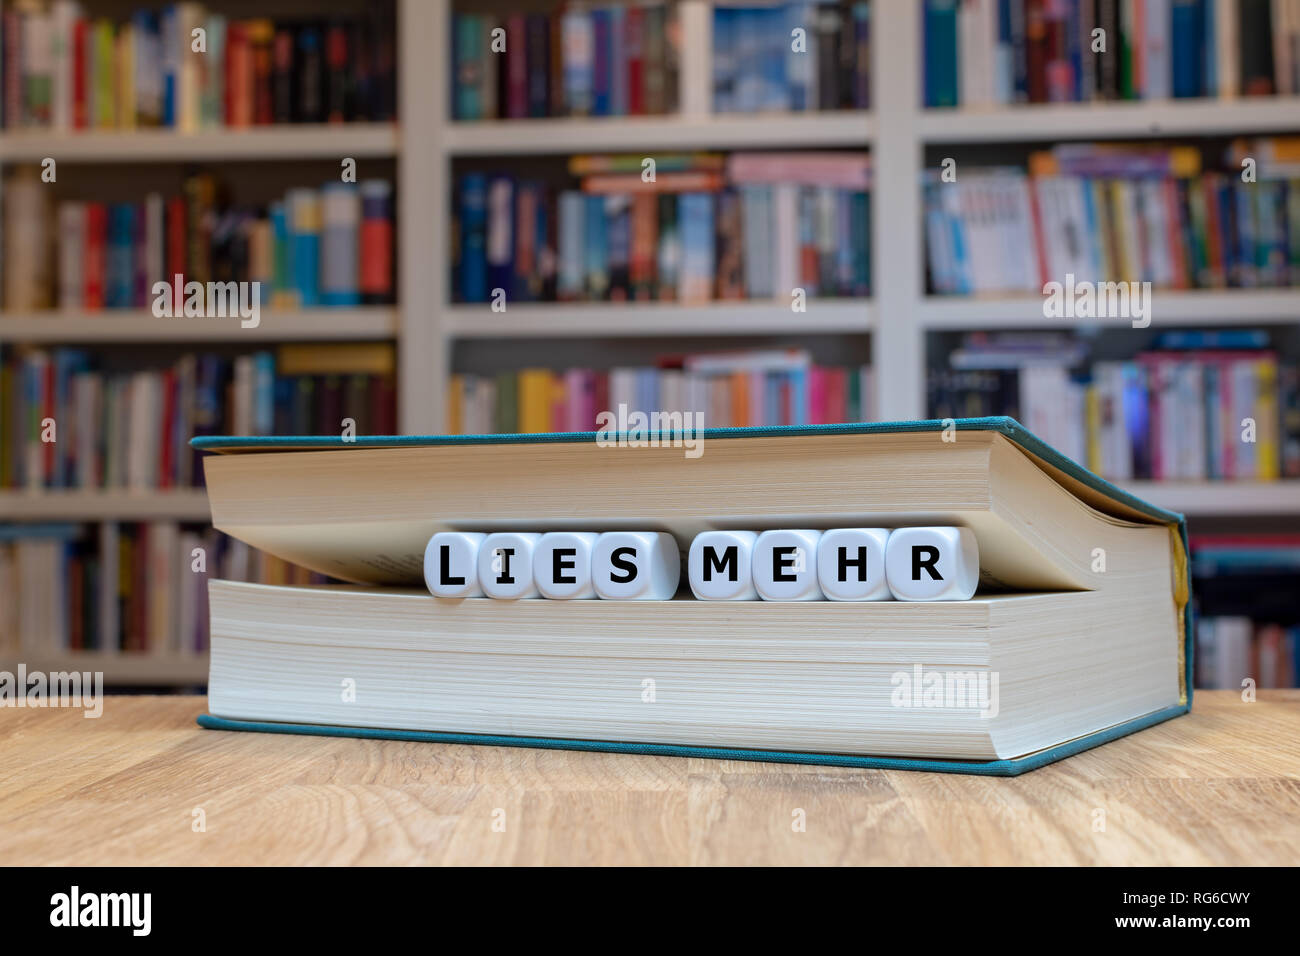 Würfel zwischen Buchseiten bilden die Worte 'bugie mehr". Das Buch liegt auf einer Holzoberfläche vor einem Bücherregal Foto Stock